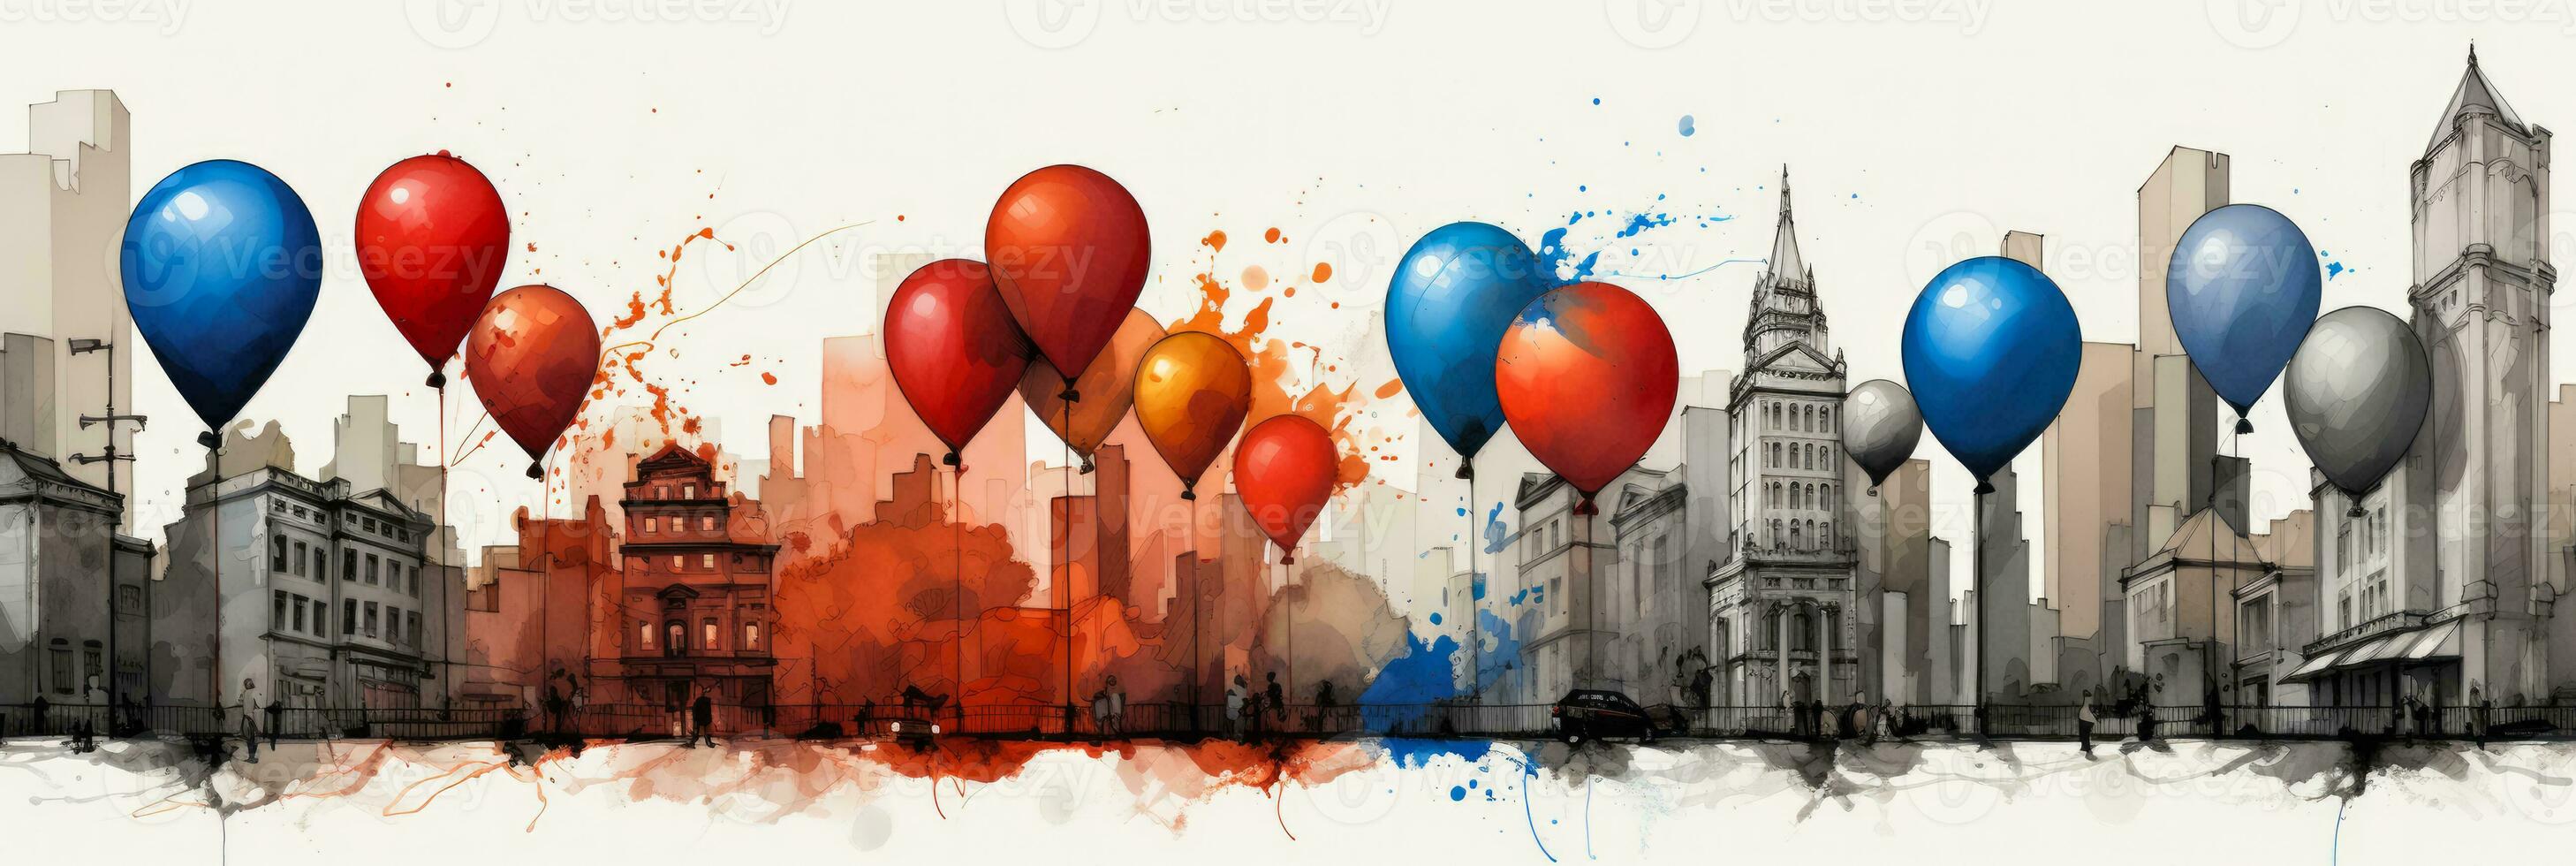 tijd vereerd macys optocht ballonnen gevangen genomen in krantenpapier grijs omber palissander rood kobalt blauw foto